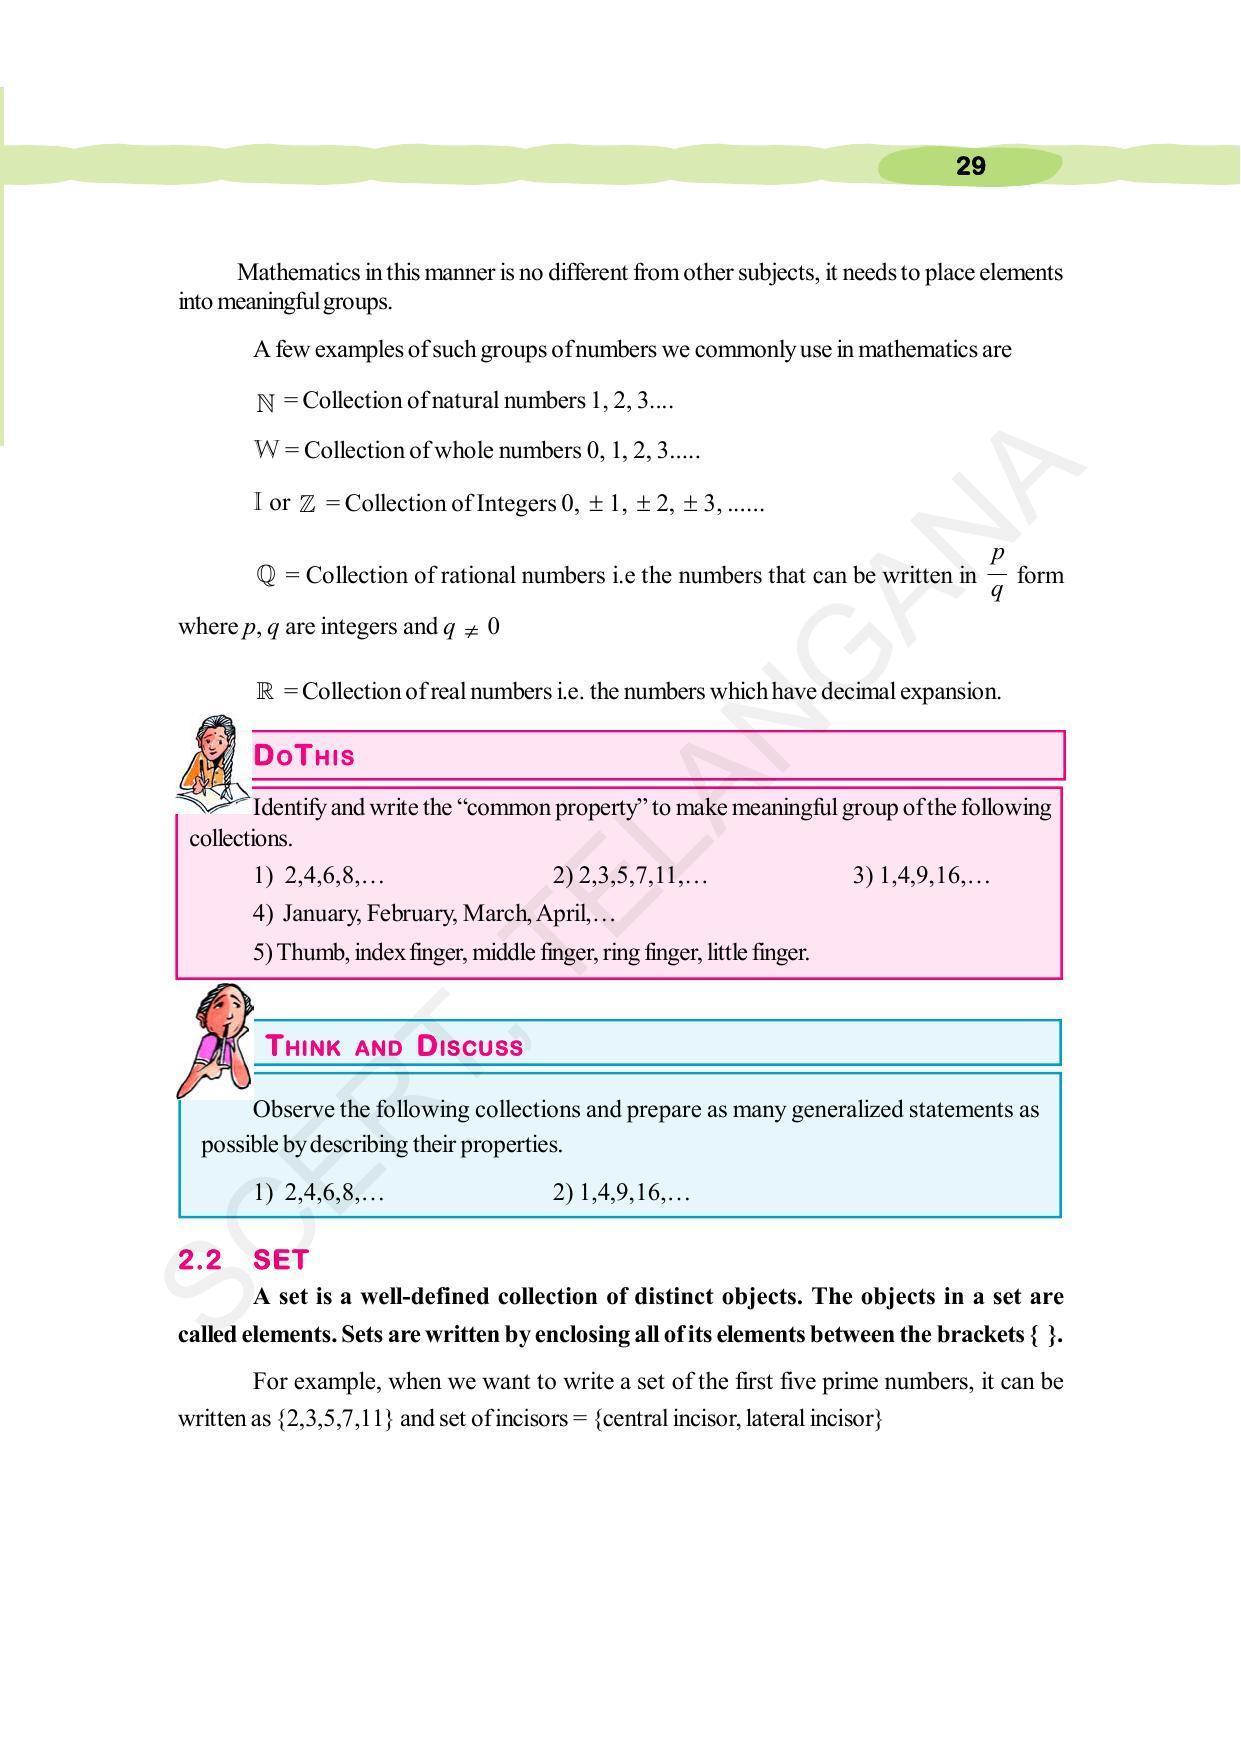 TS SCERT Class 10 Maths (English Medium) Text Book - Page 39